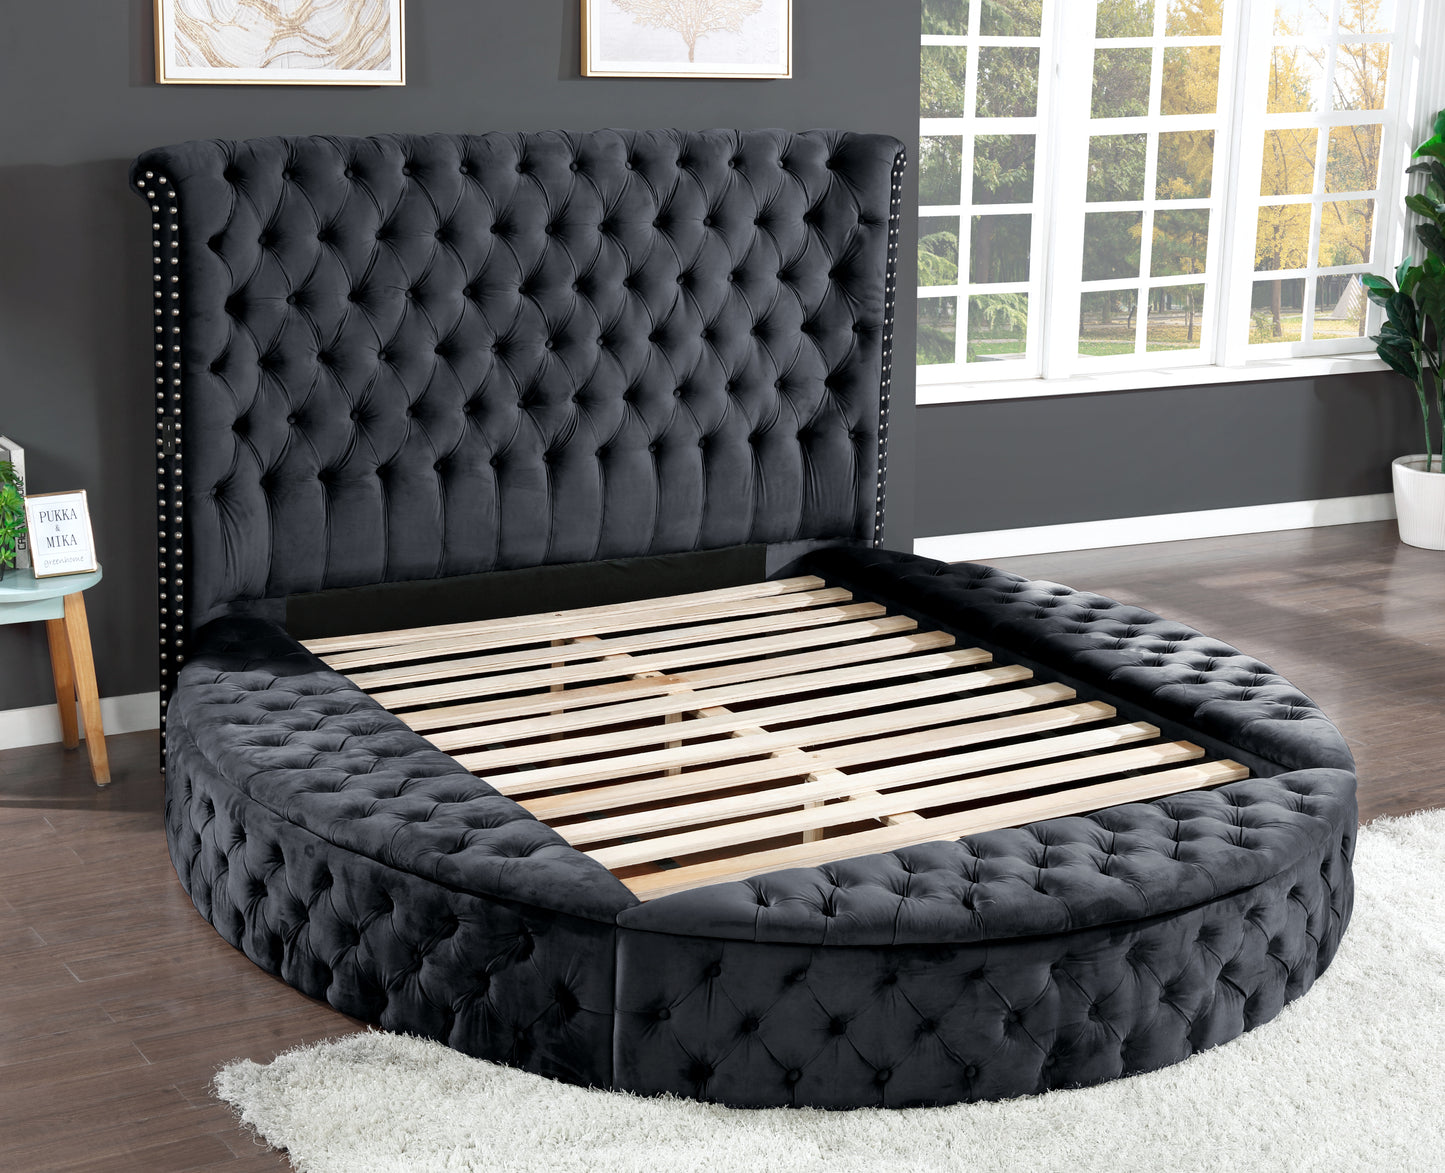 Gaiva Queen Bed (black)